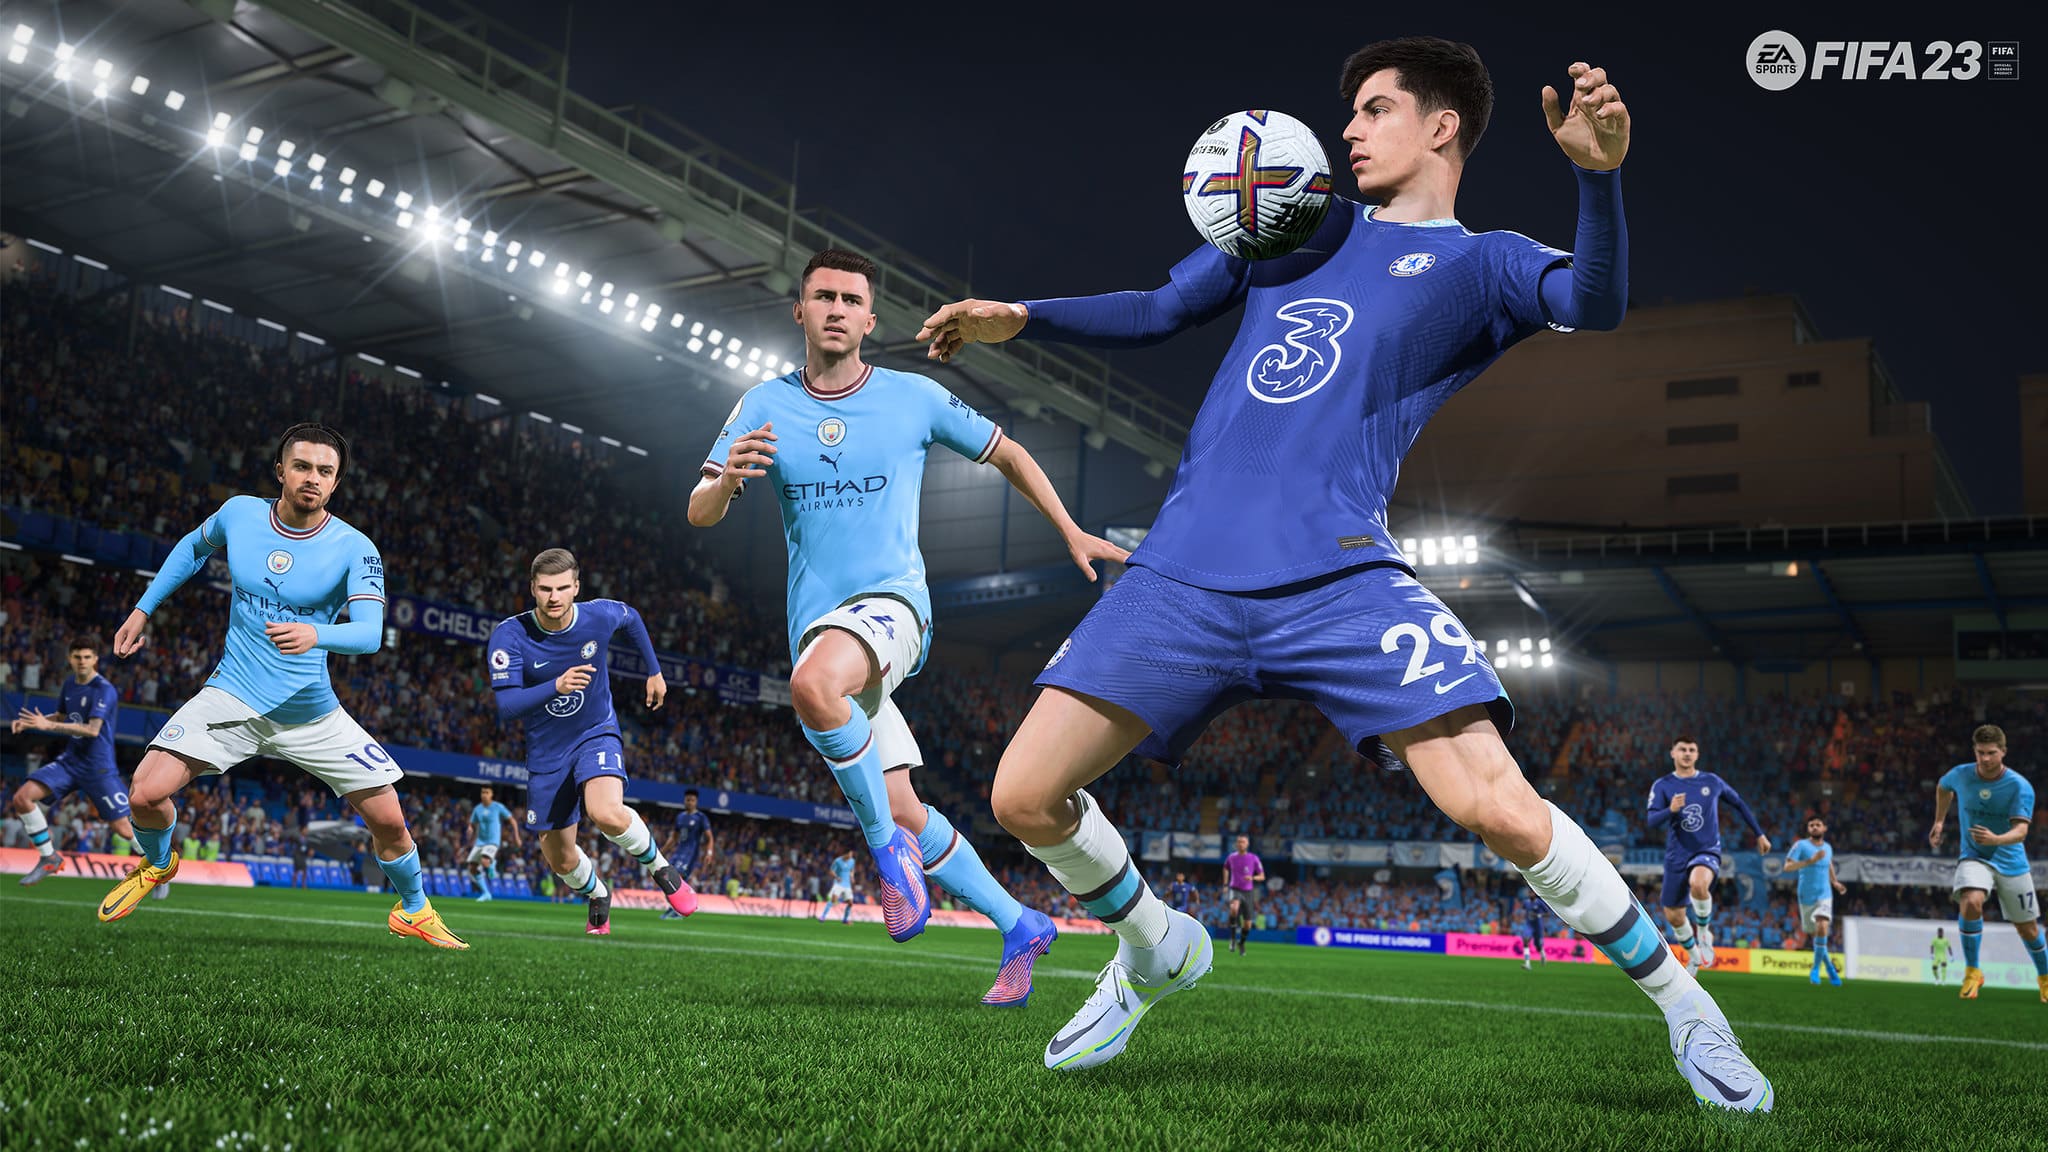 FIFA 23 Update 1.000.024